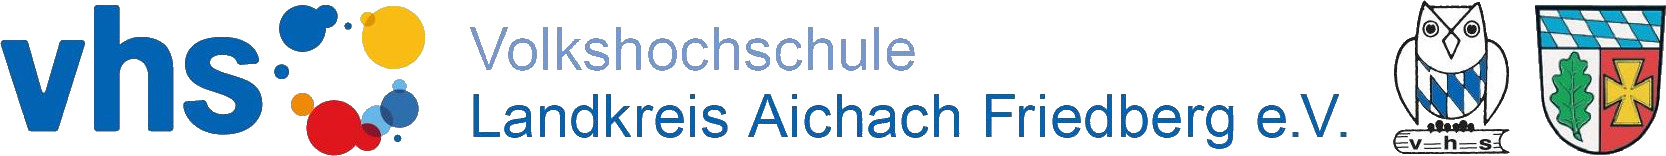 Schriftzug vhs, daneben kreisförmig farbige Punkte, dann Schriftzug Volkshochschule Landkreis Aichach-Friedberg e.V. dann Wappen vhs und Wappen Landkreis